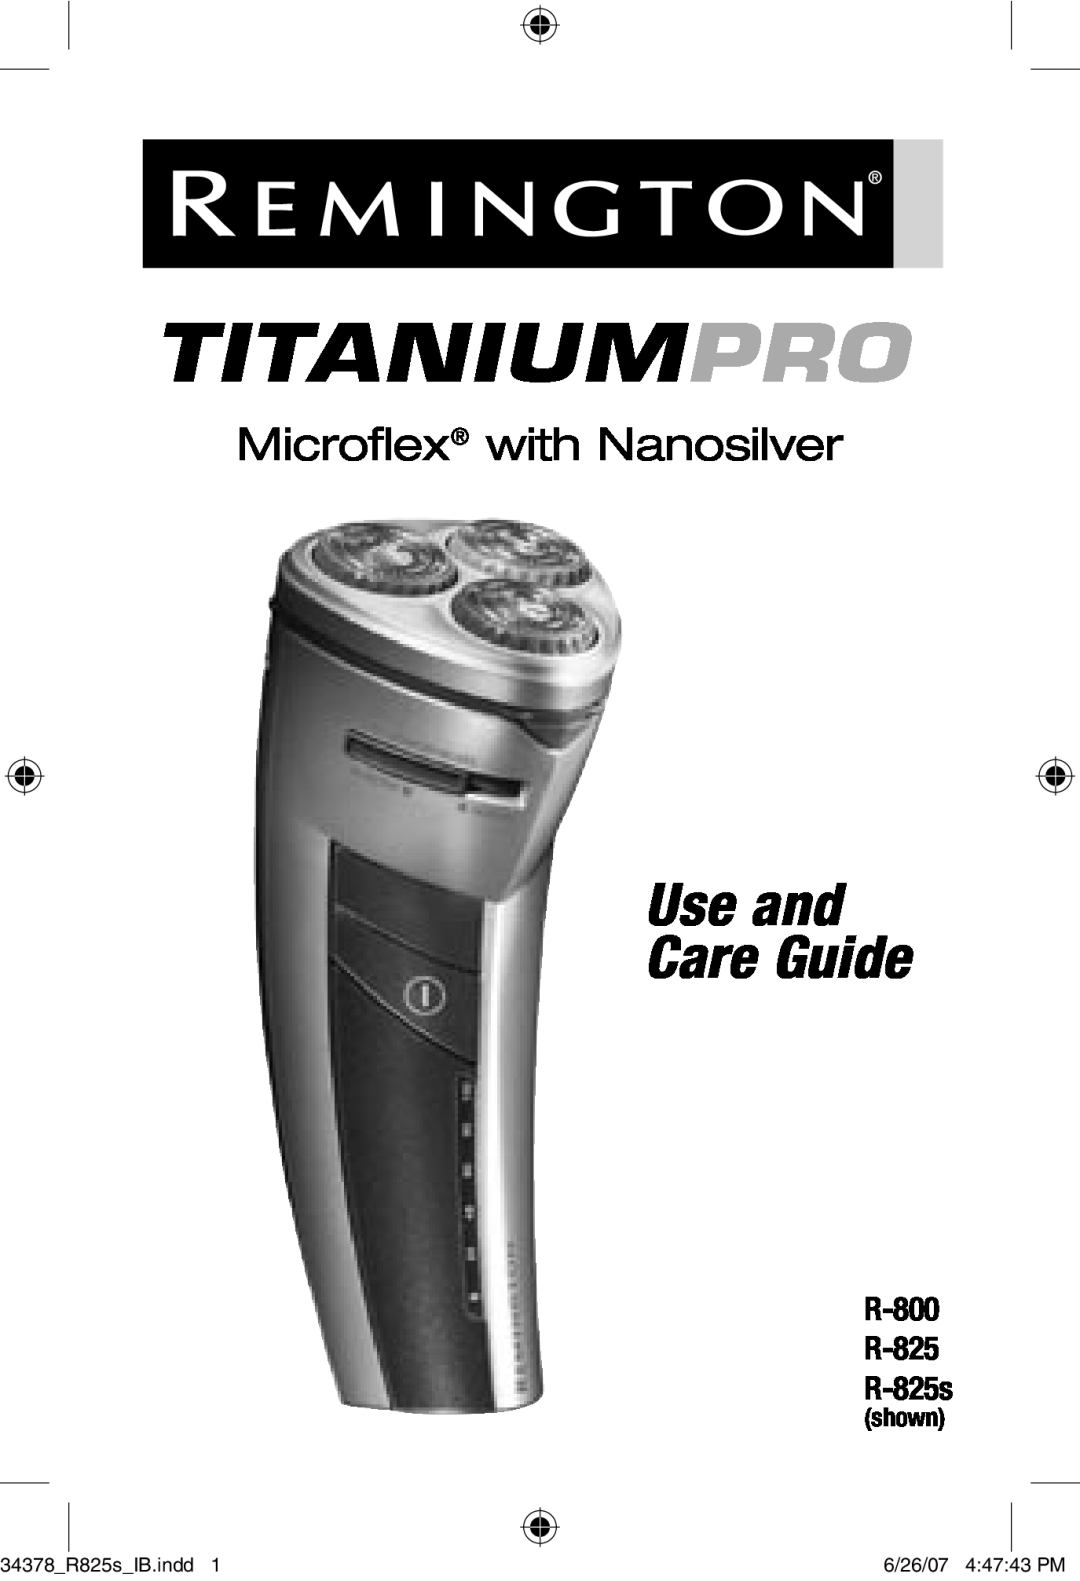 Remington manual Titaniumpro, Microflex with Nanosilver, R-800 R-825 R-825s, Use and Care Guide, 34378R825sIB.indd 